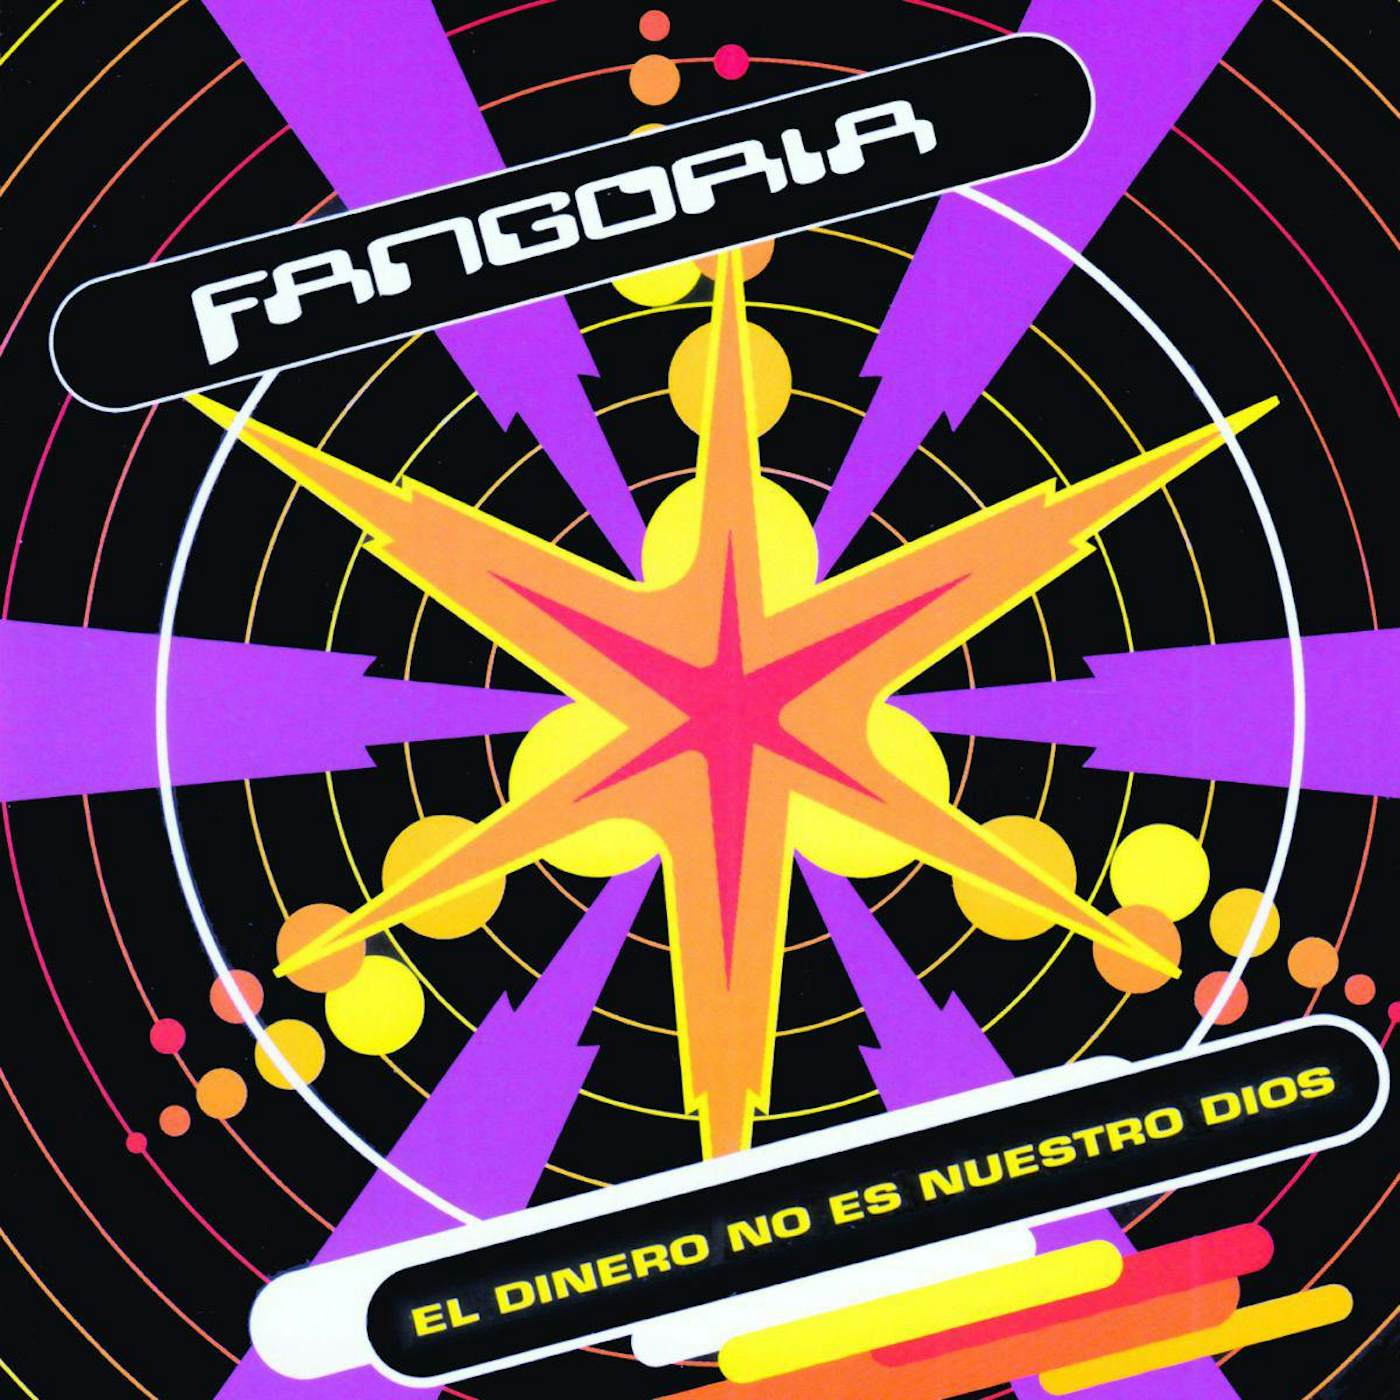 Fangoria - Entre mil dudas Color Rojo : Fangoria: : CDs y vinilos}